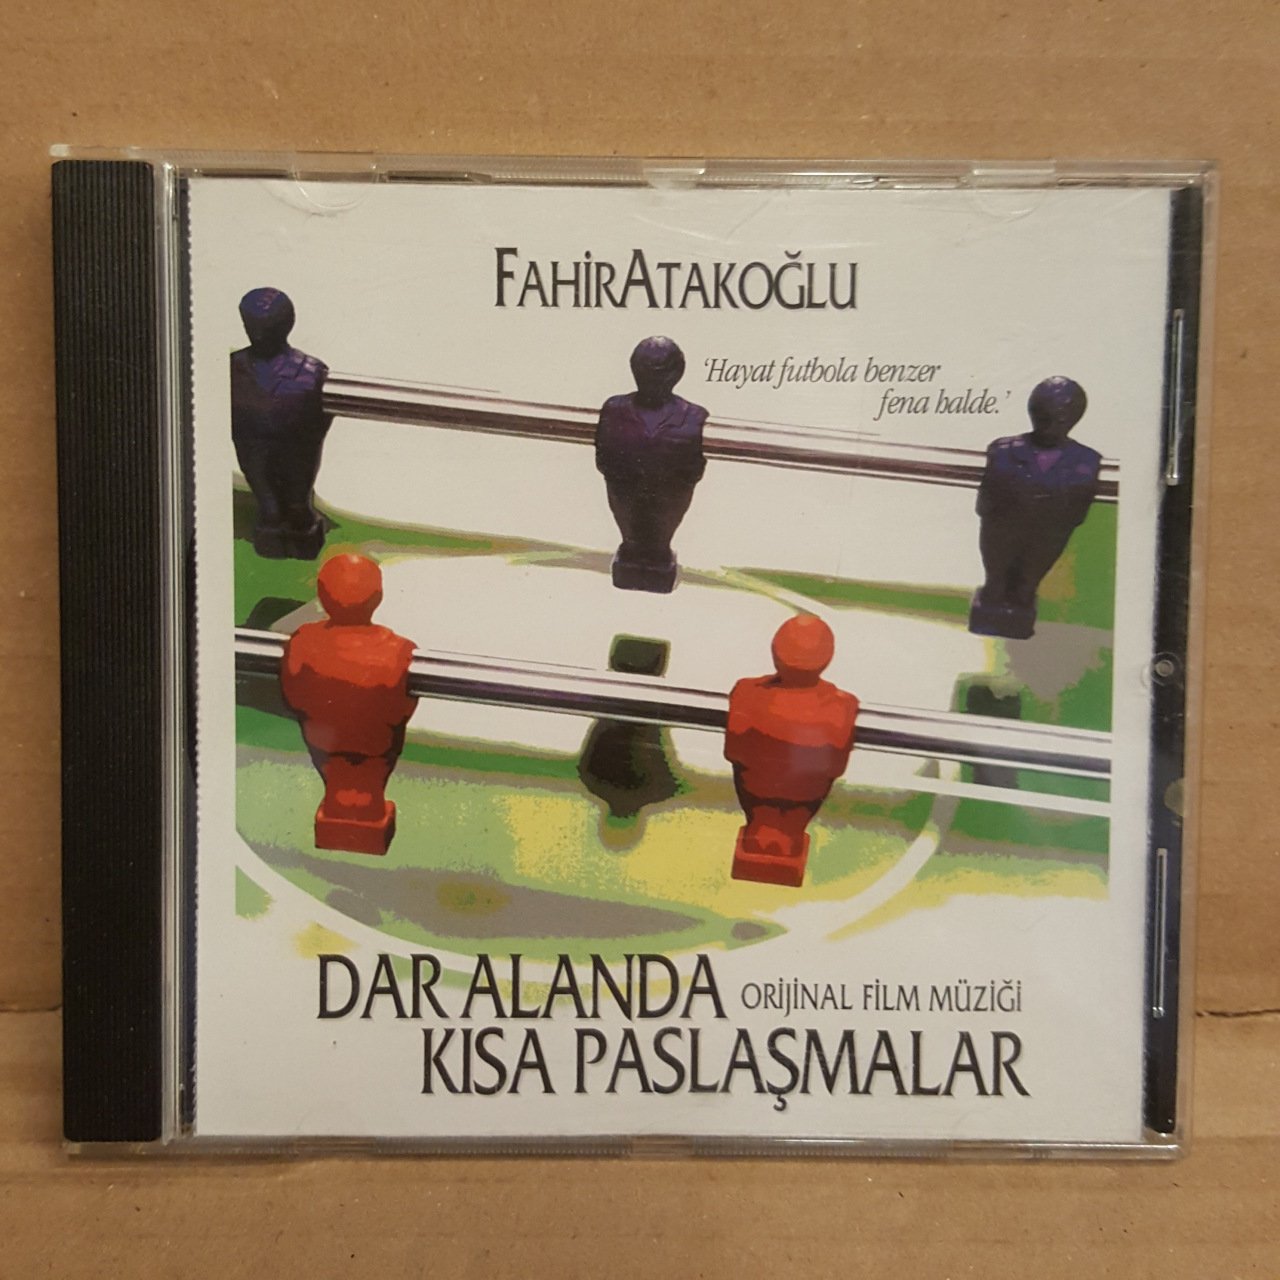 DAR ALANDA KISA PASLAŞMALAR - FİLM MÜZİĞİ / FAHİR ATAKOĞLU (2000) - CD 2.EL